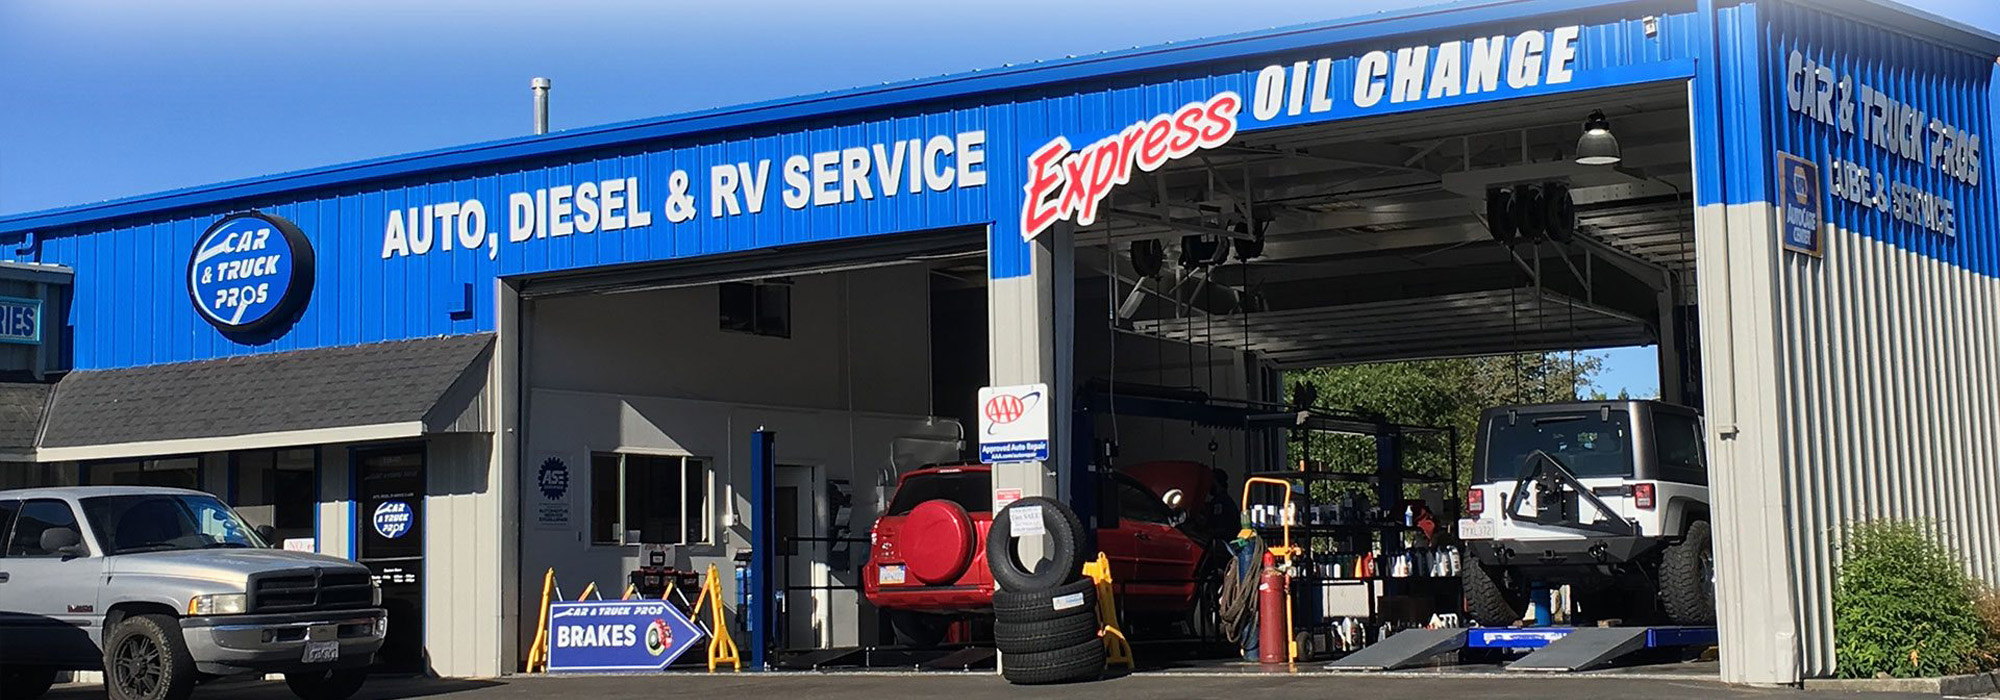 Auto, Diesel, & RV Service